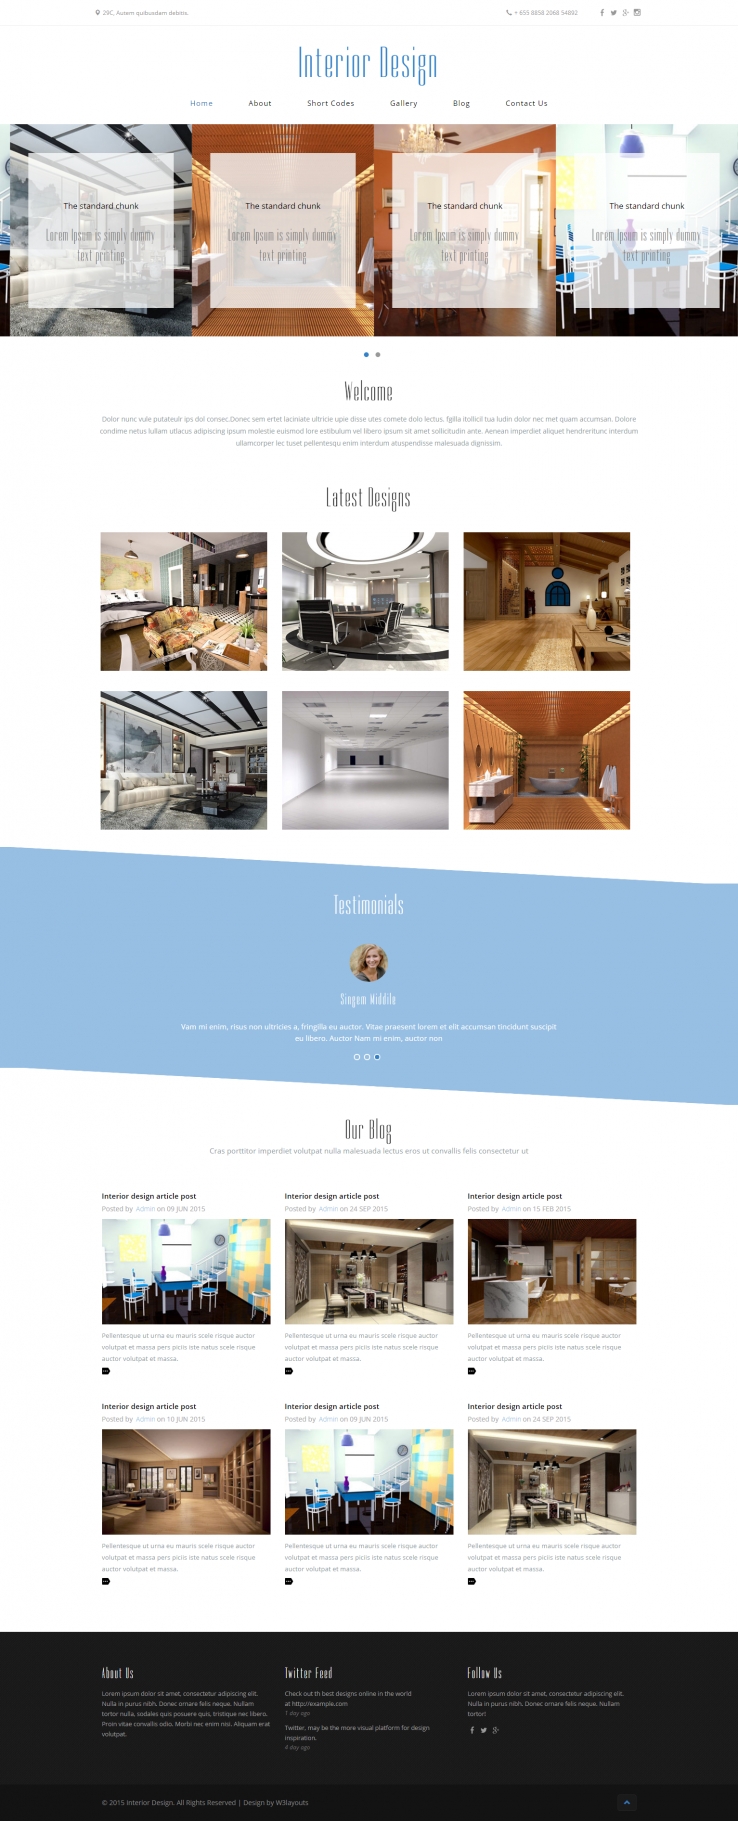 蓝色简洁风格的室内设计案例整站网站源码下载